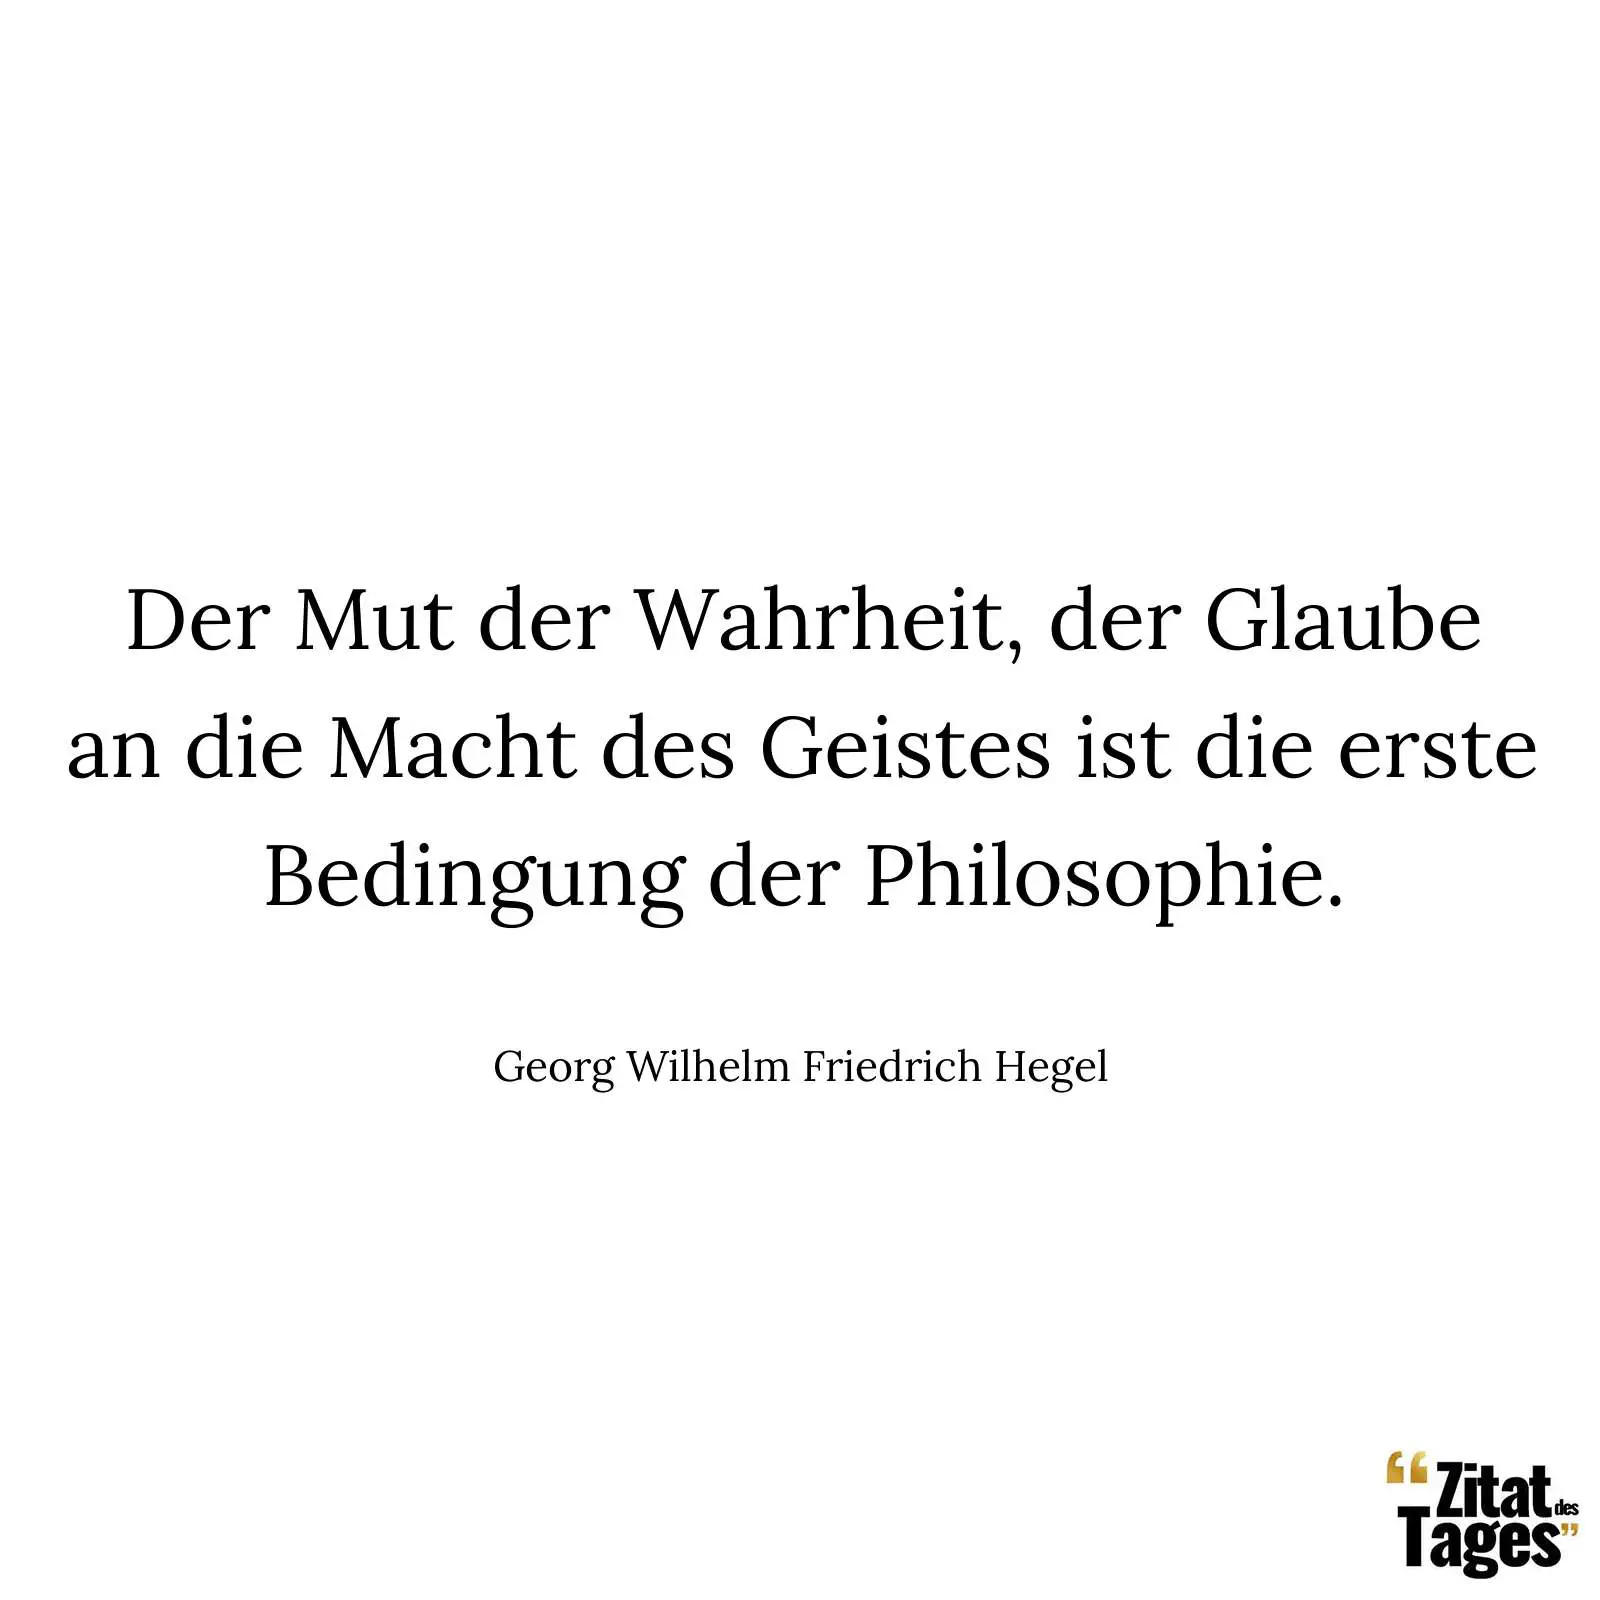 Der Mut der Wahrheit, der Glaube an die Macht des Geistes ist die erste Bedingung der Philosophie. - Georg Wilhelm Friedrich Hegel